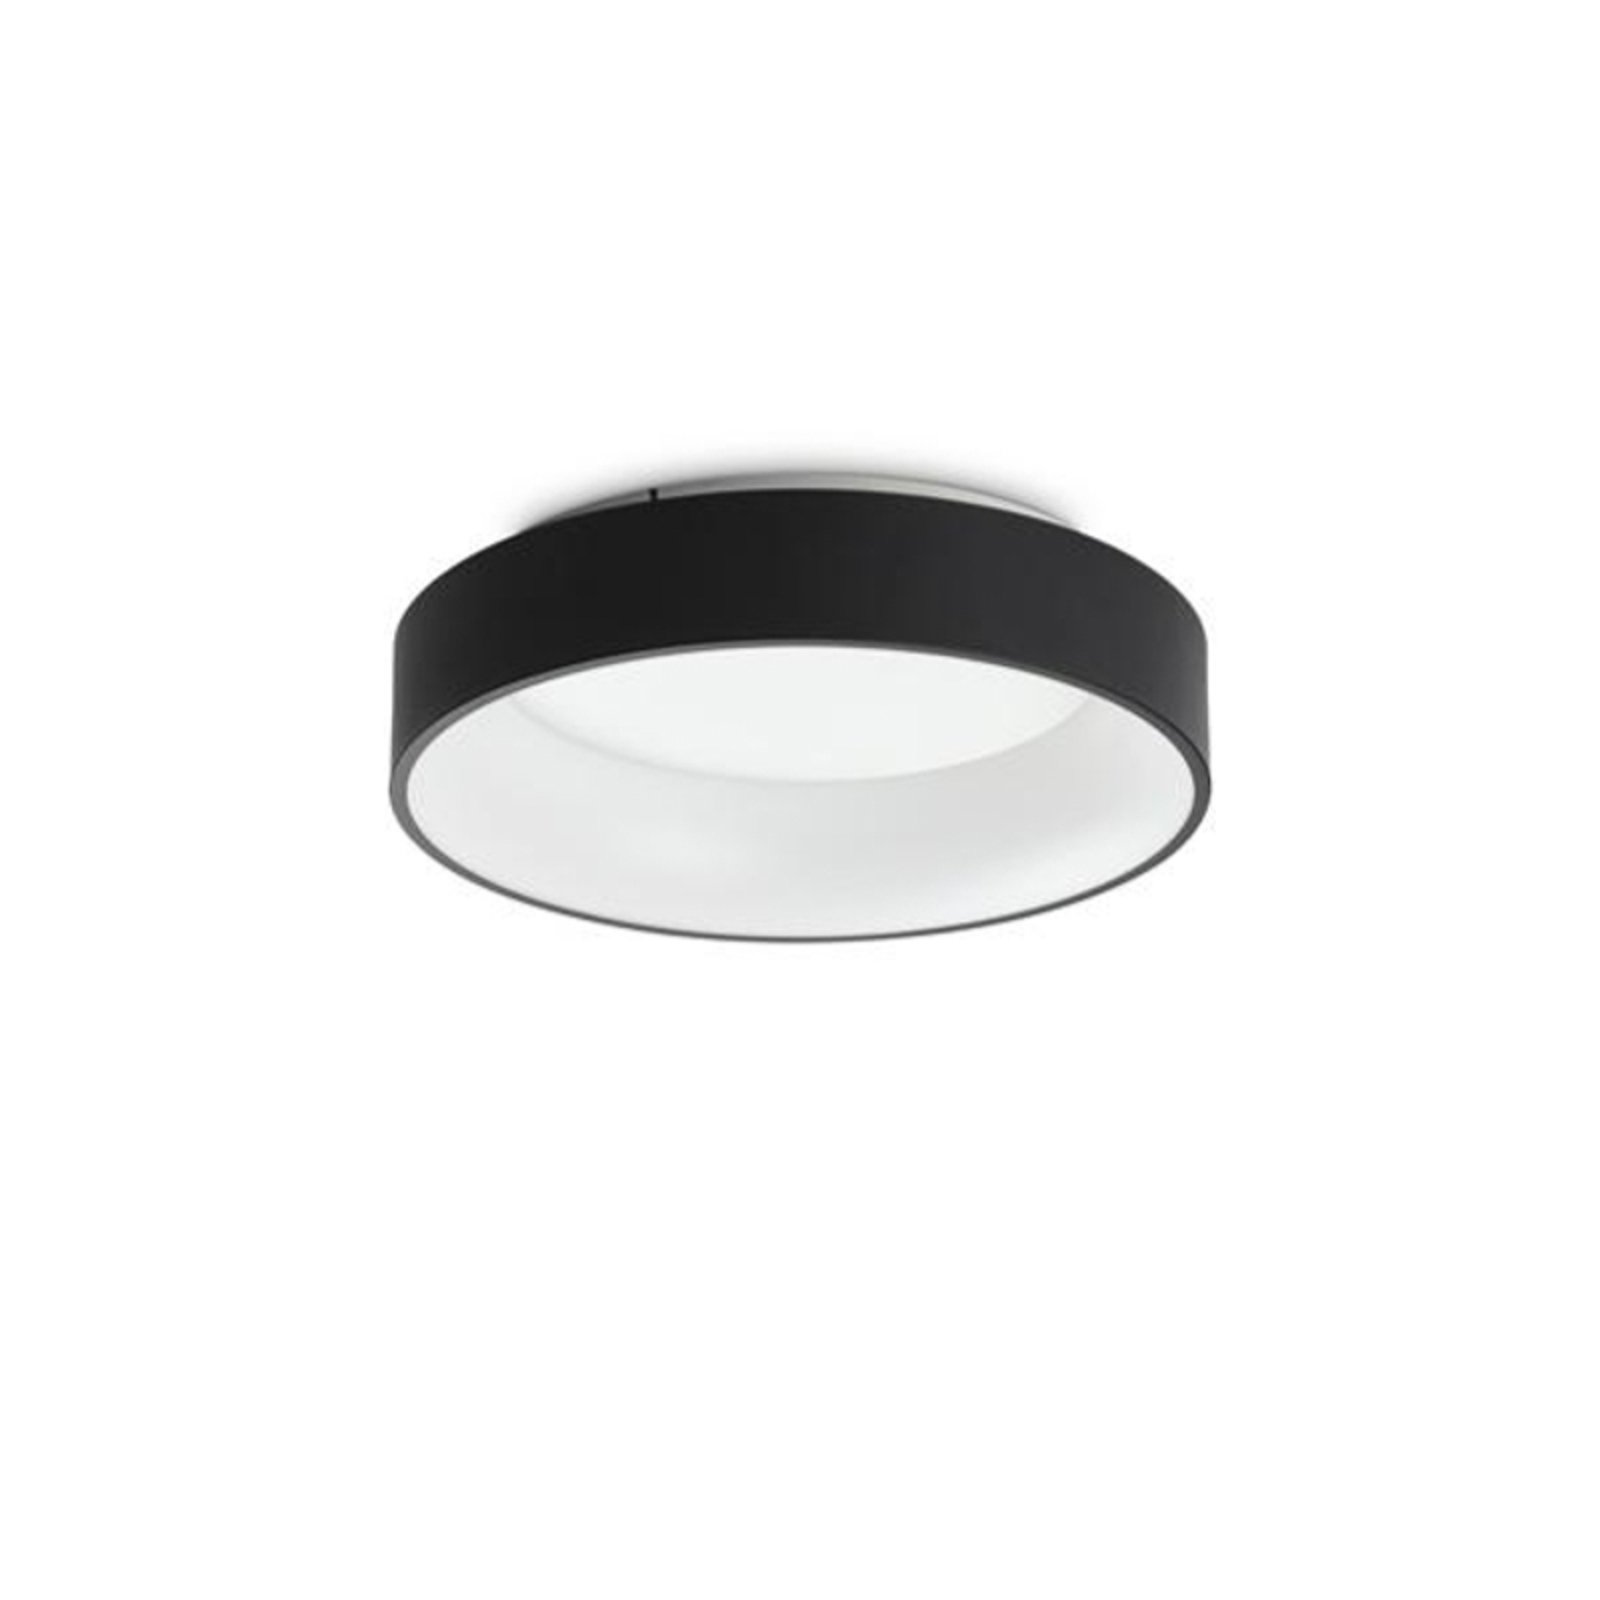 Ideal Lux LED stropna svjetiljka Ziggy, crna, Ø 45 cm, metal